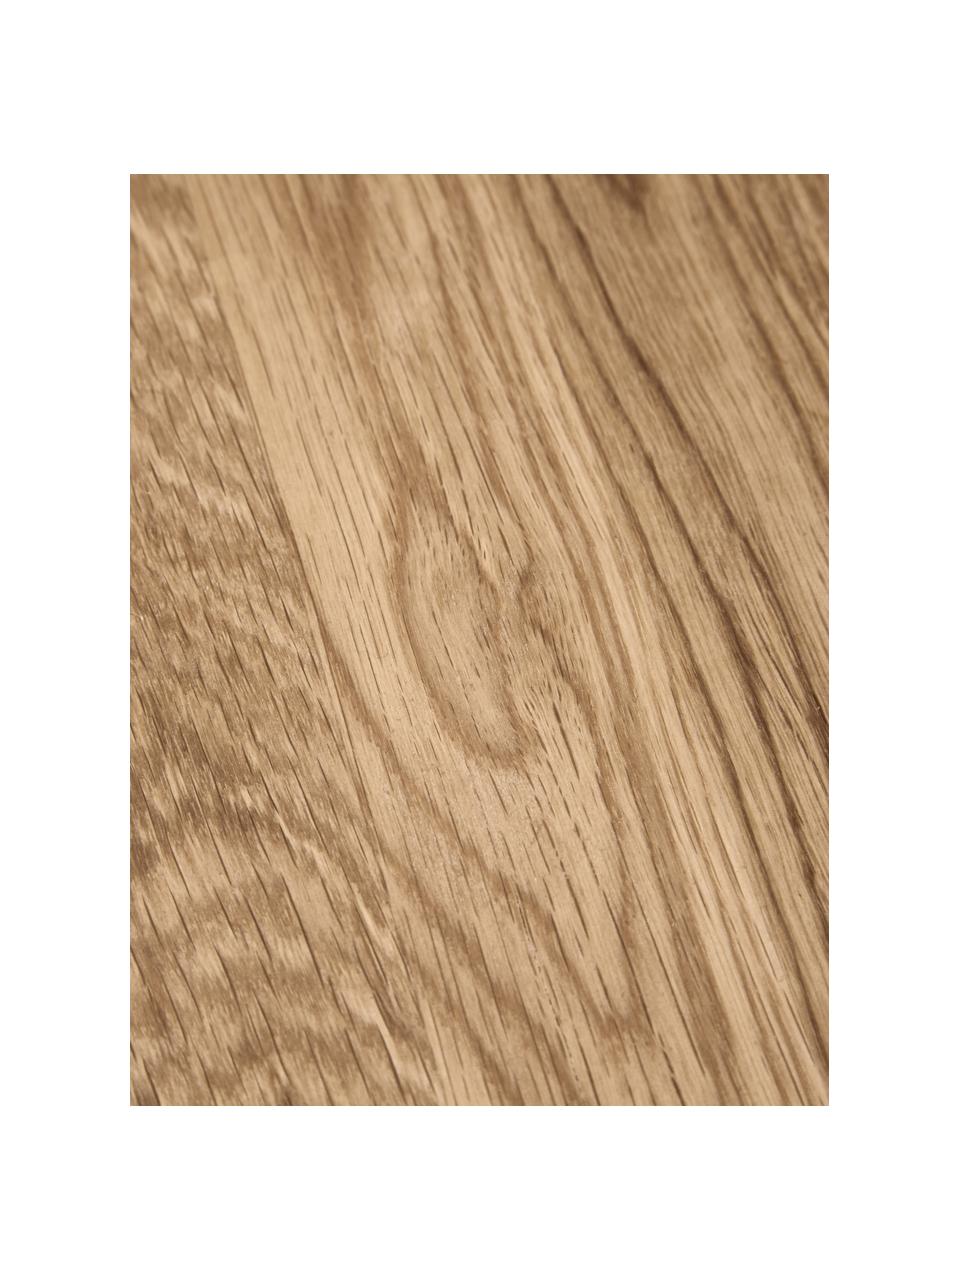 Odkládací stolek z dubového dřeva Didi, Masivní dubové dřevo, olejované

Tento produkt je vyroben z udržitelných zdrojů dřeva s certifikací FSC®., Dubové dřevo, Ø 40 cm, V 45 cm